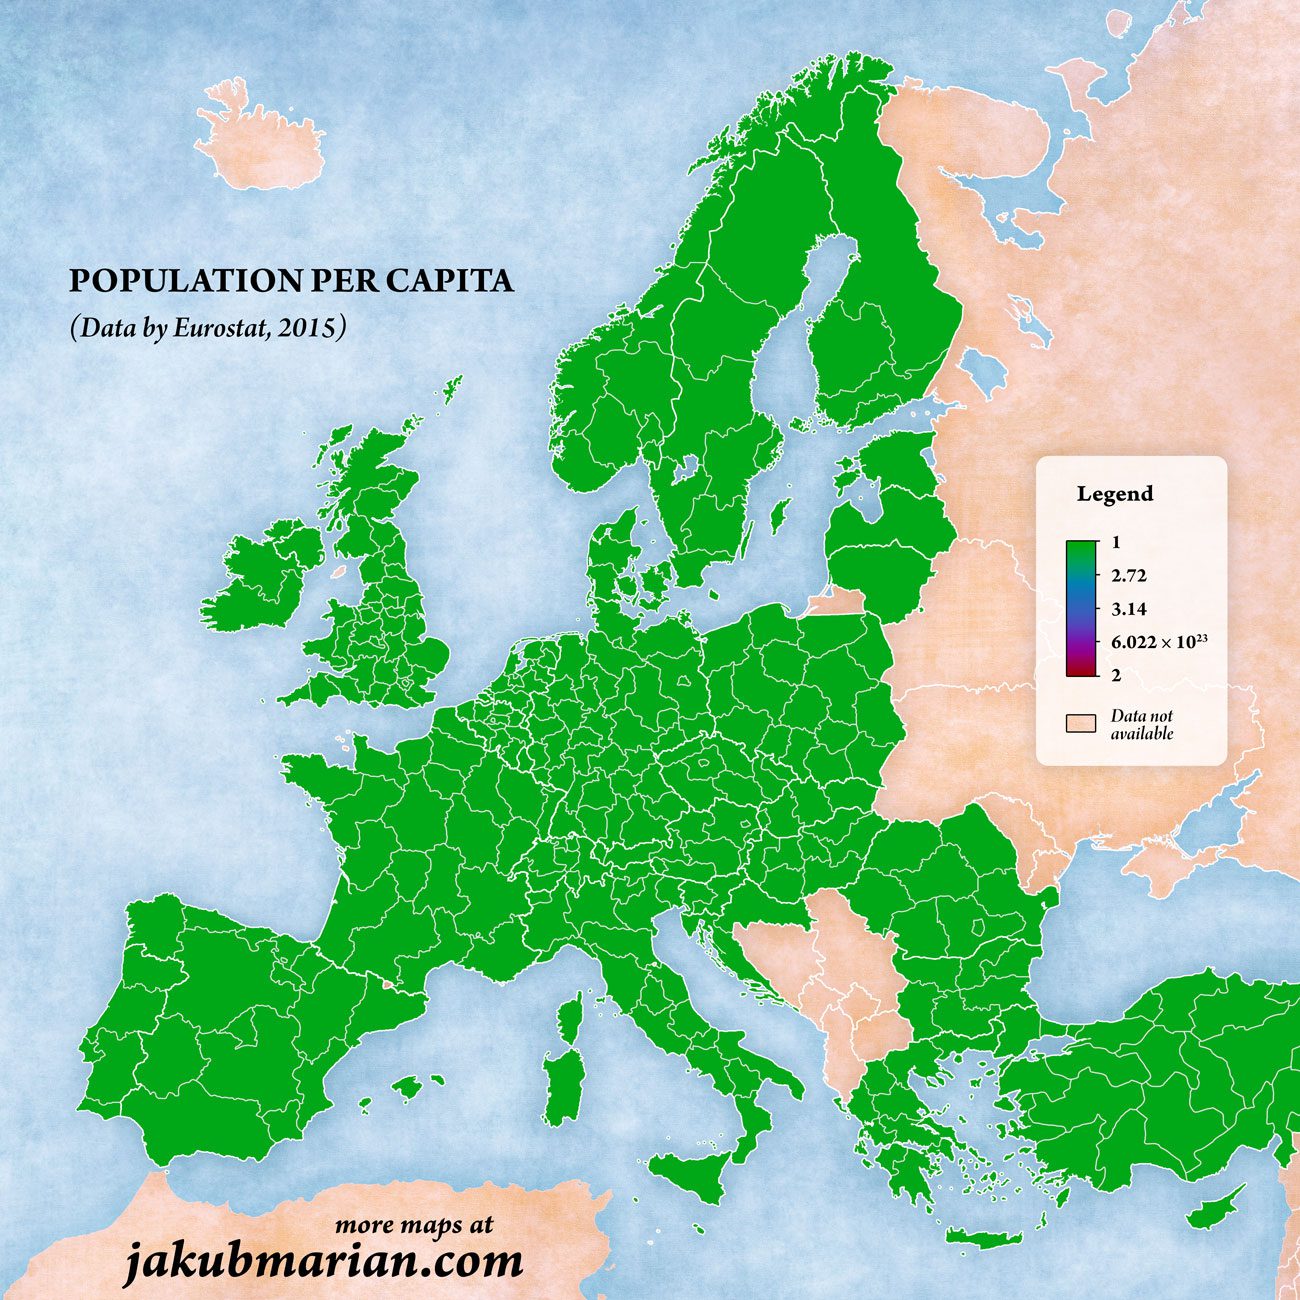 Población per cápita por país en Europa